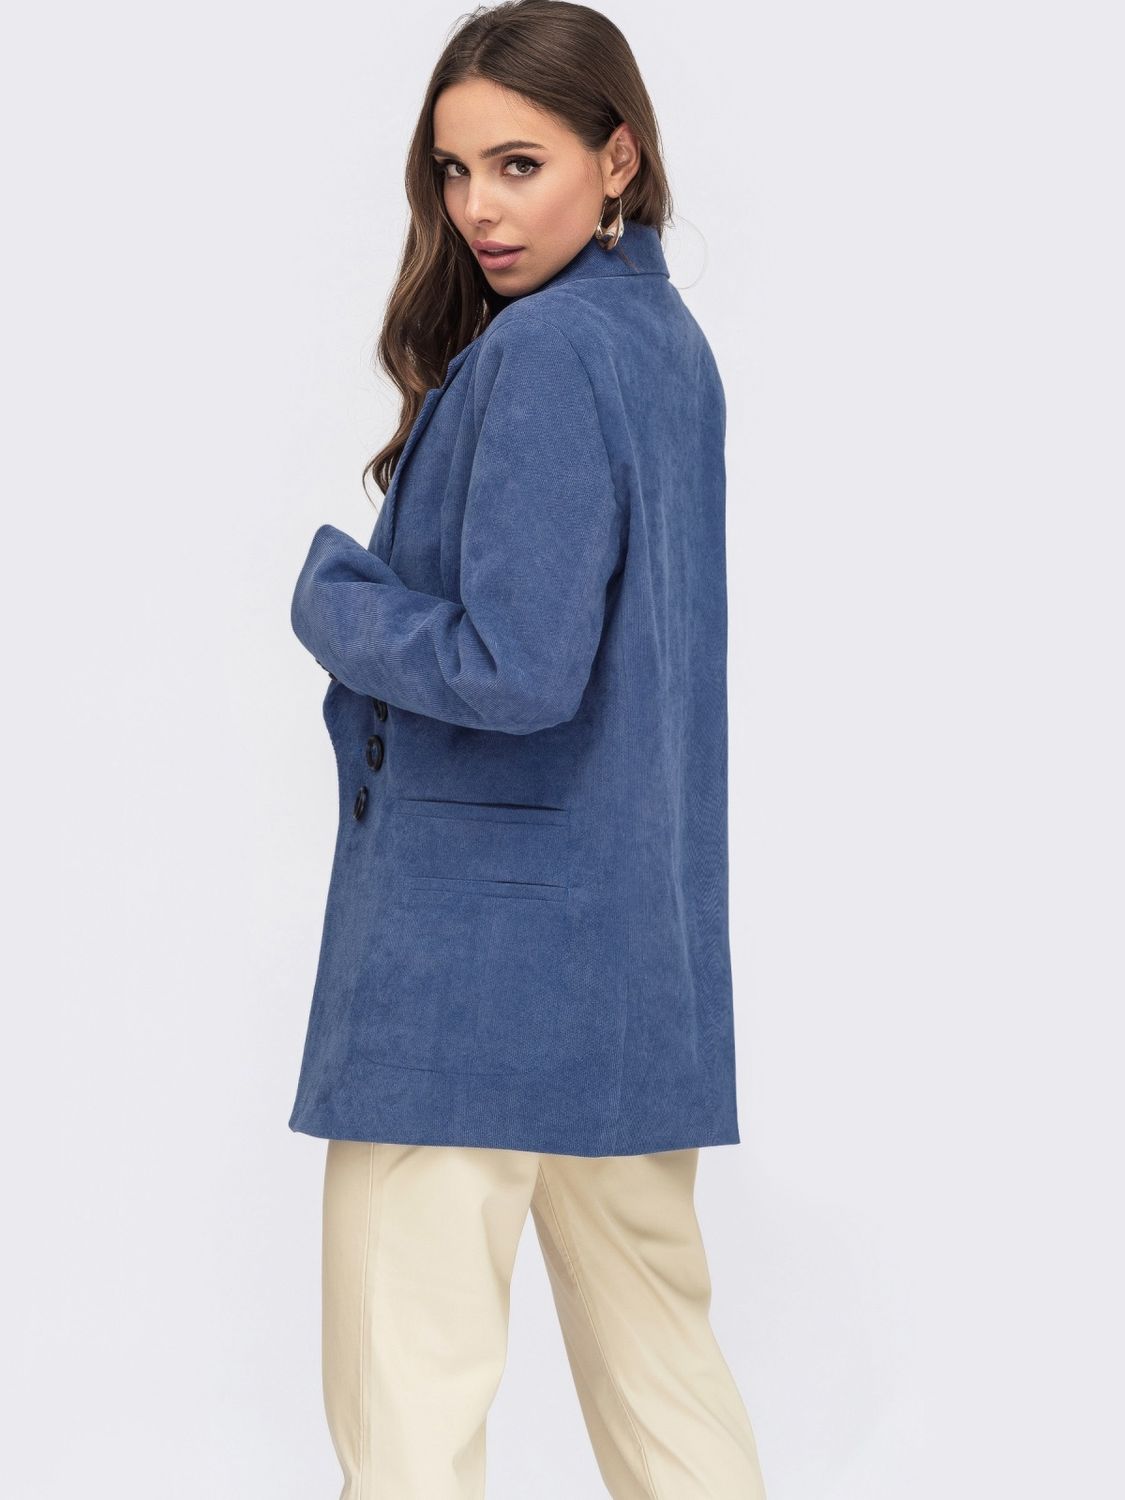 Жіночий вельветовий піджак синього кольору - фото